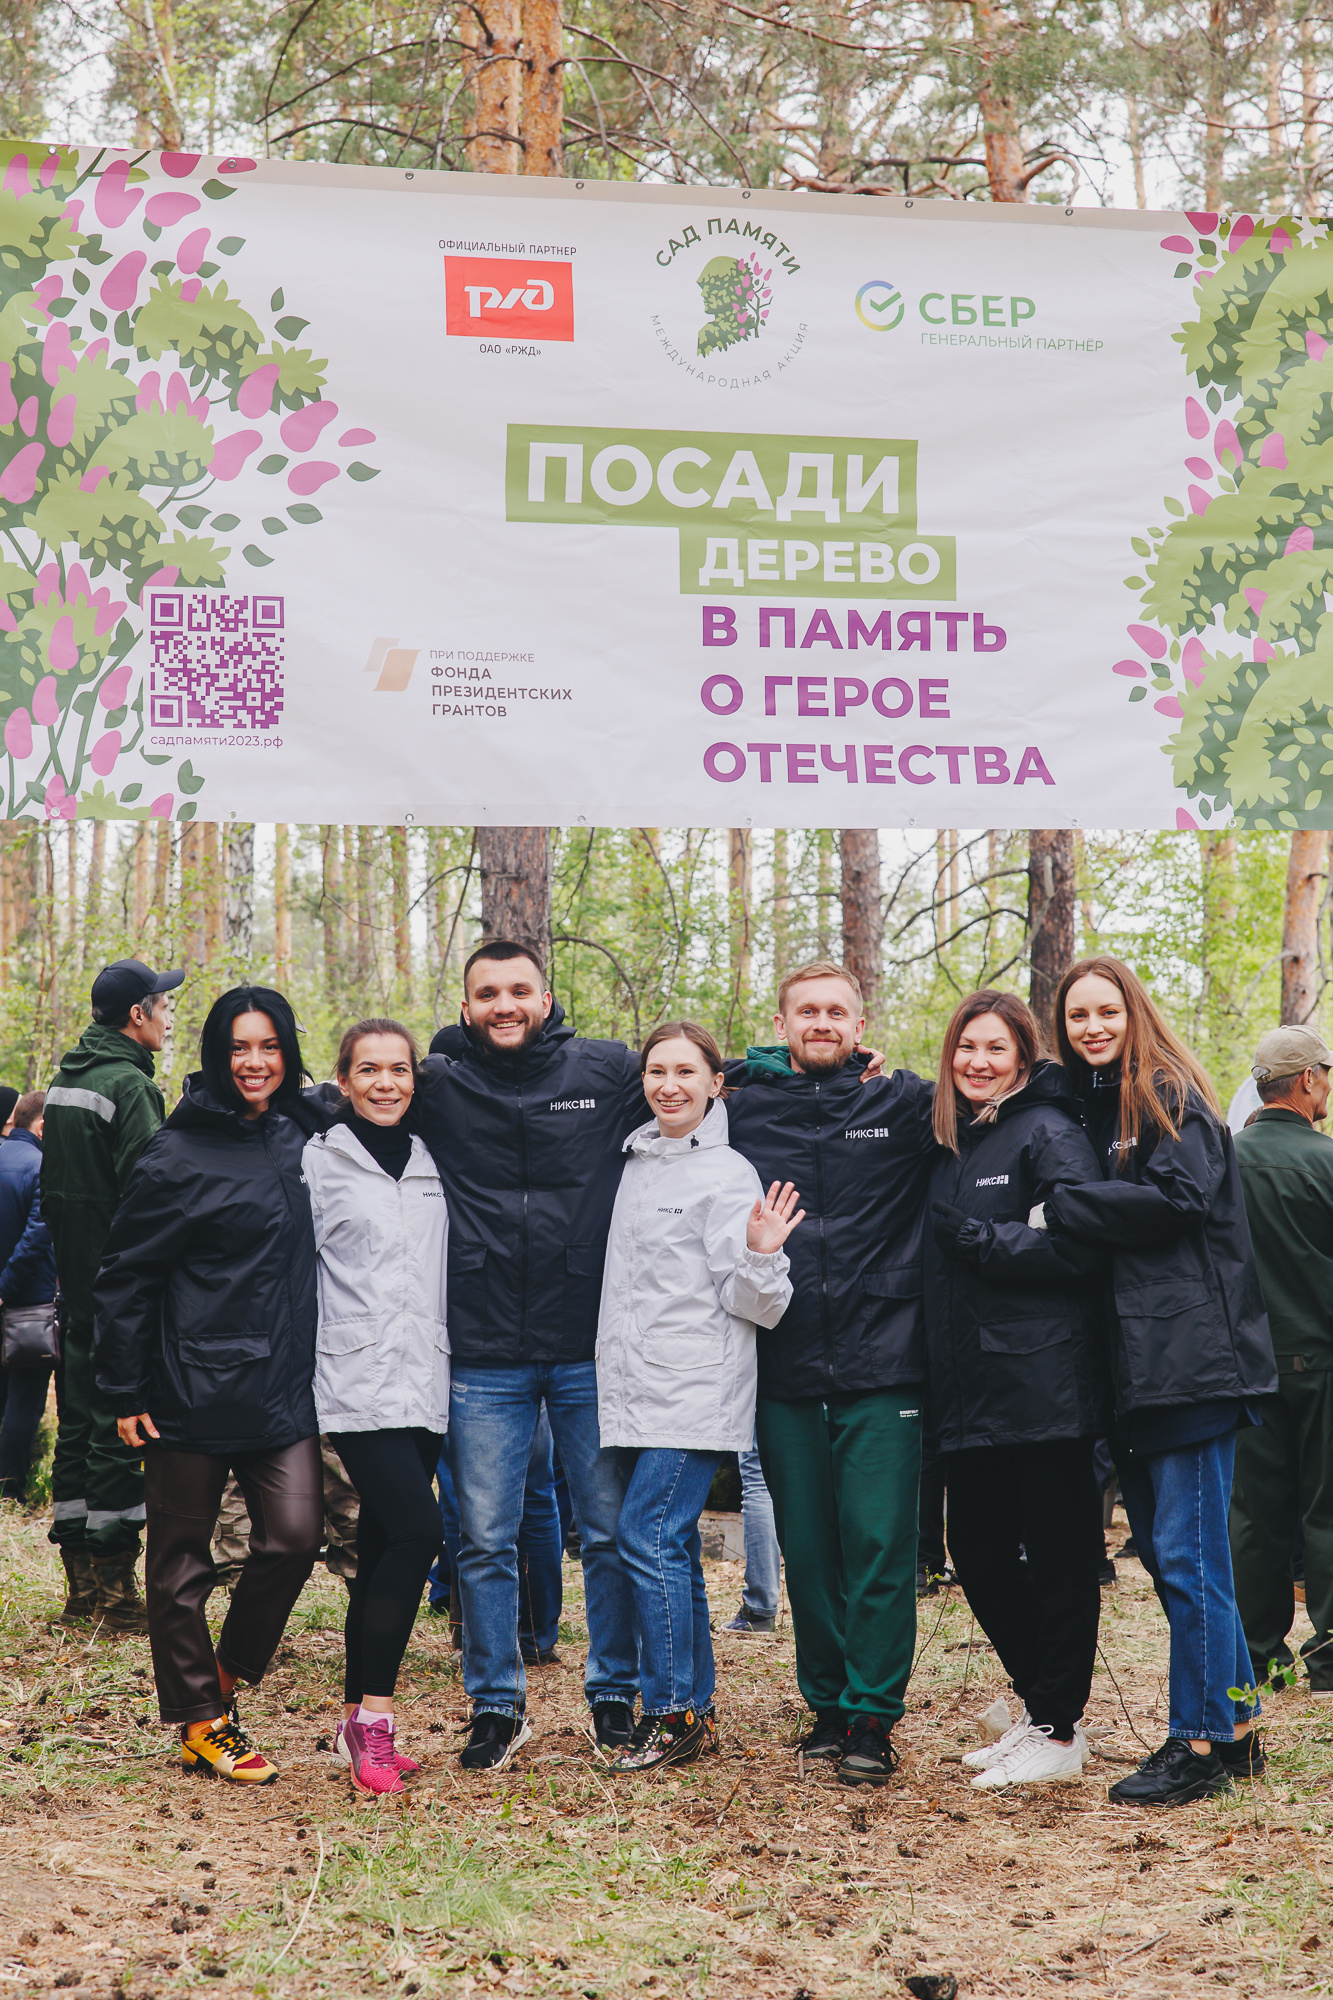 Восстановление соснового бора в Парке Гагарина приурочили к международной акции «Сад памяти», цель которой — высадить по дереву в память о каждом погибшем в Великой Отечественной